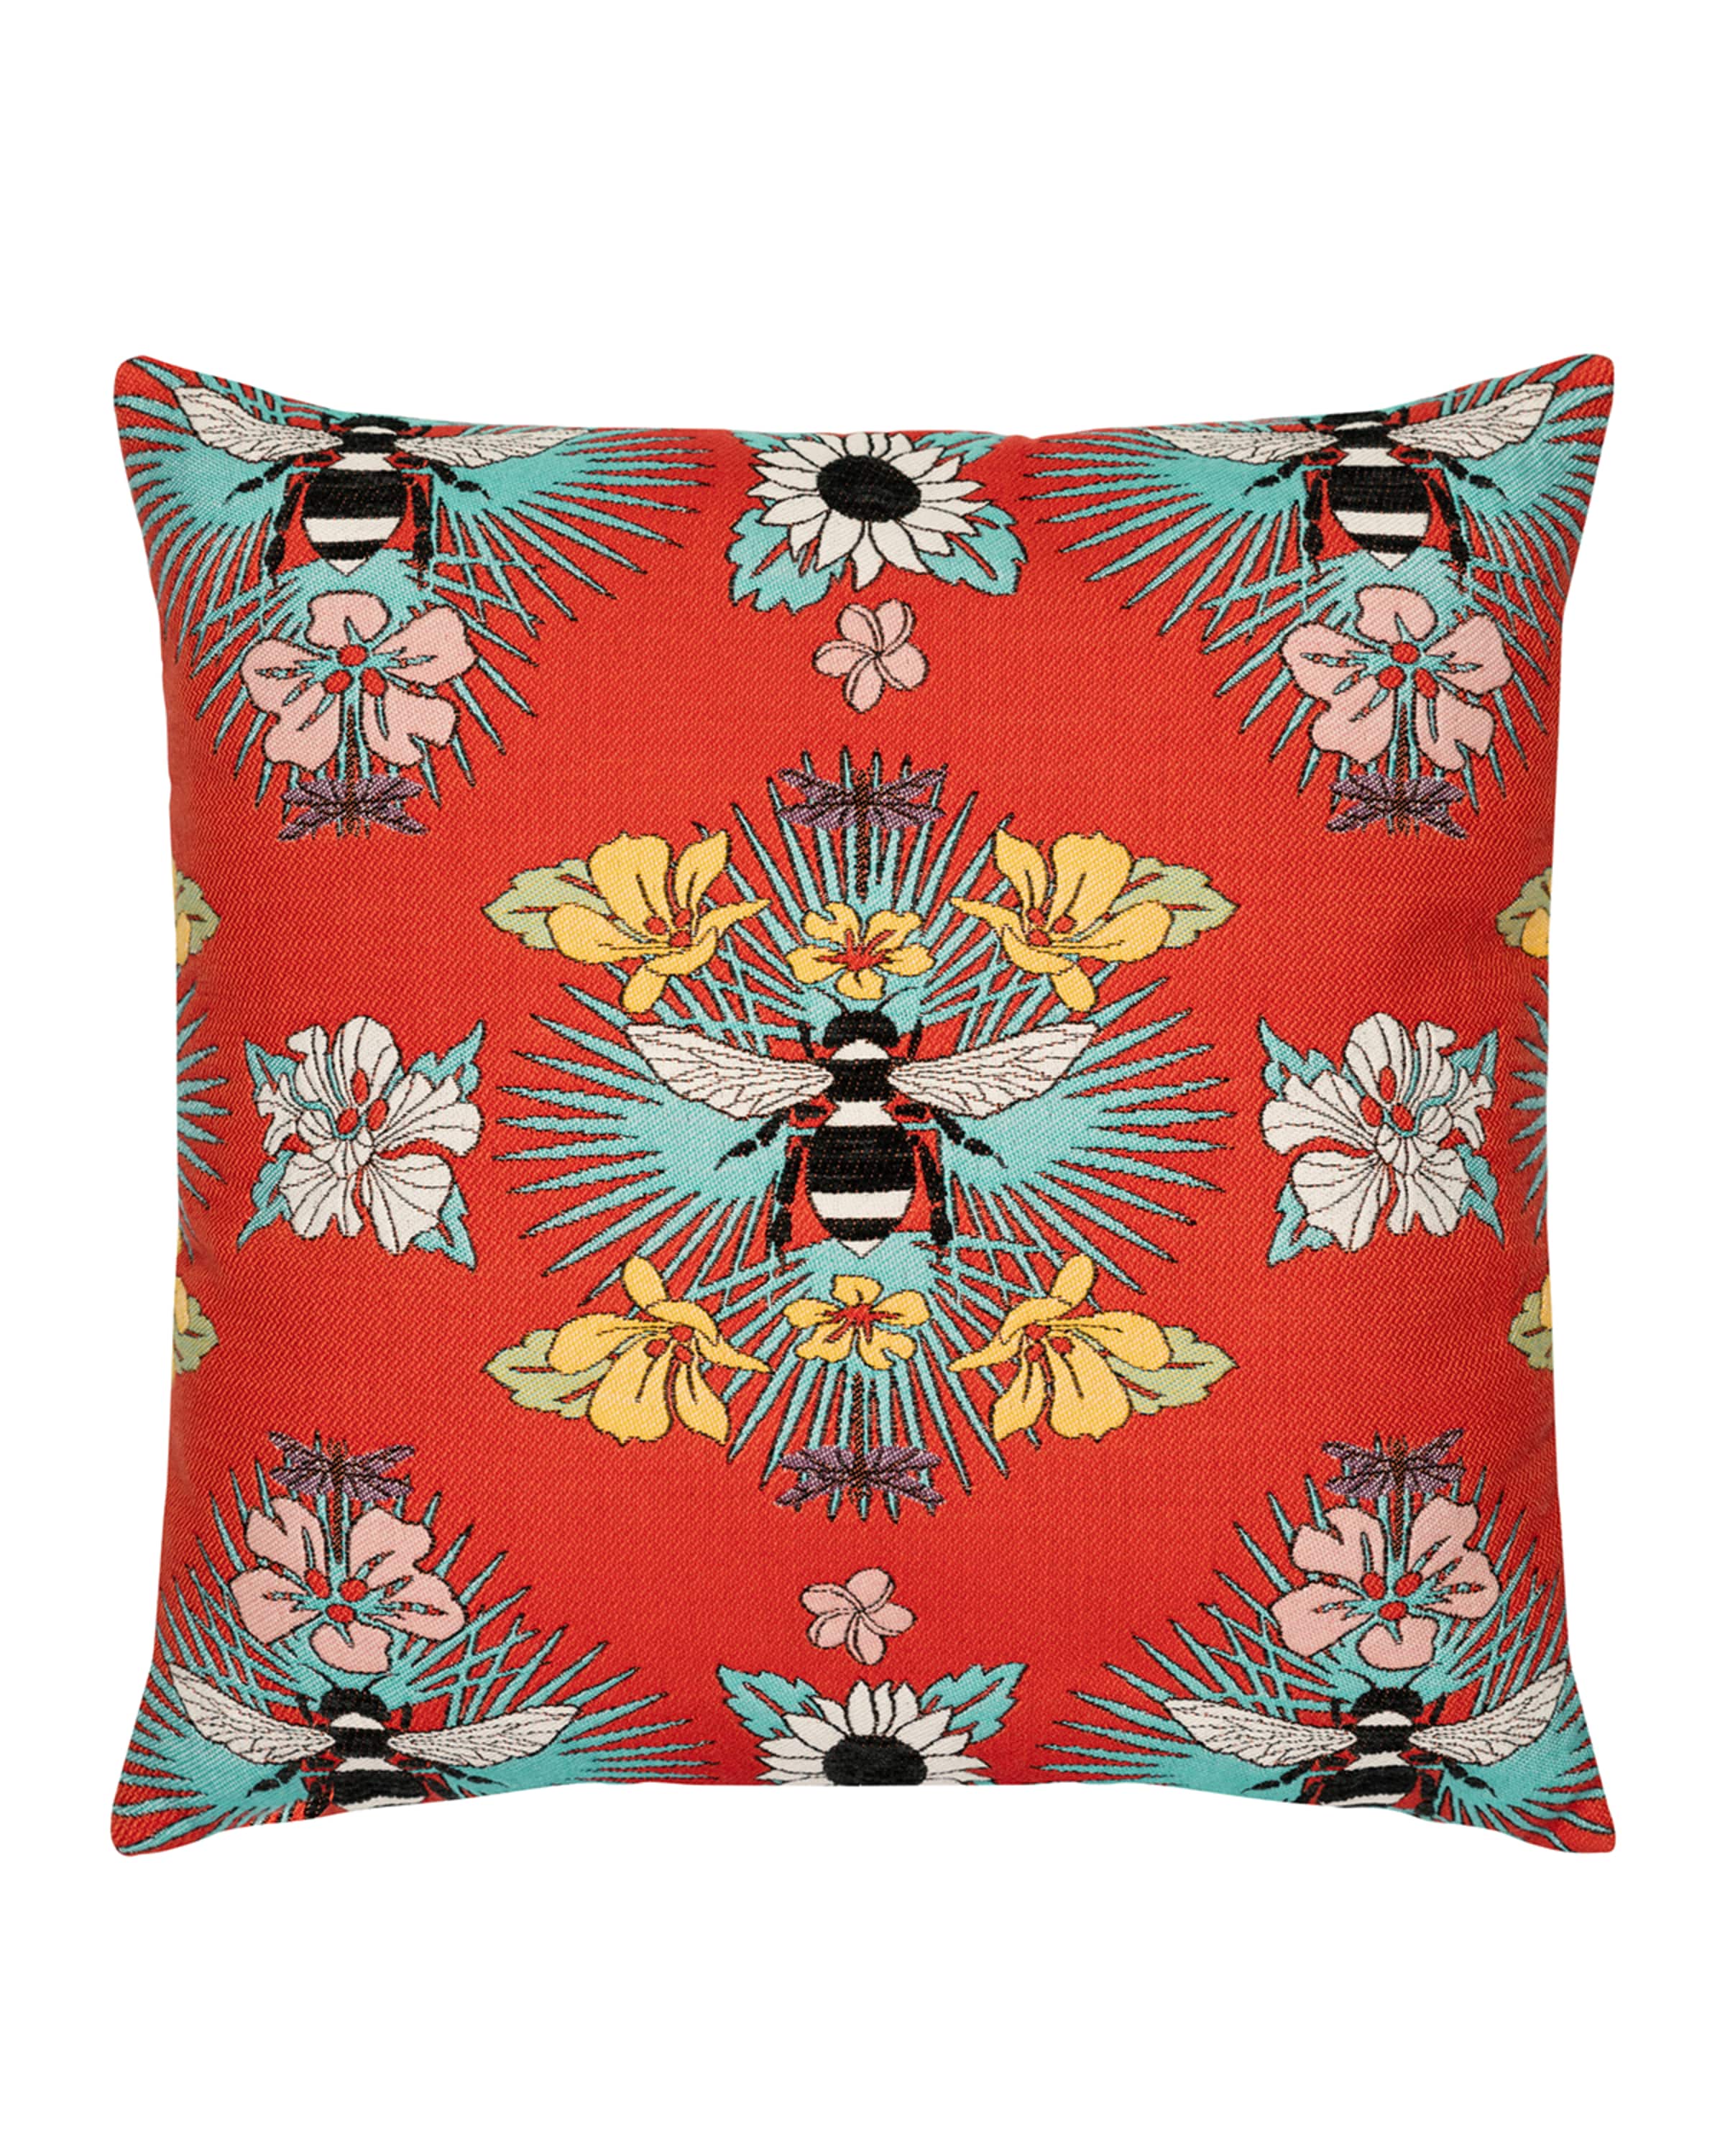 Elaine Smith Tropical Bee Sunbrella Pillow